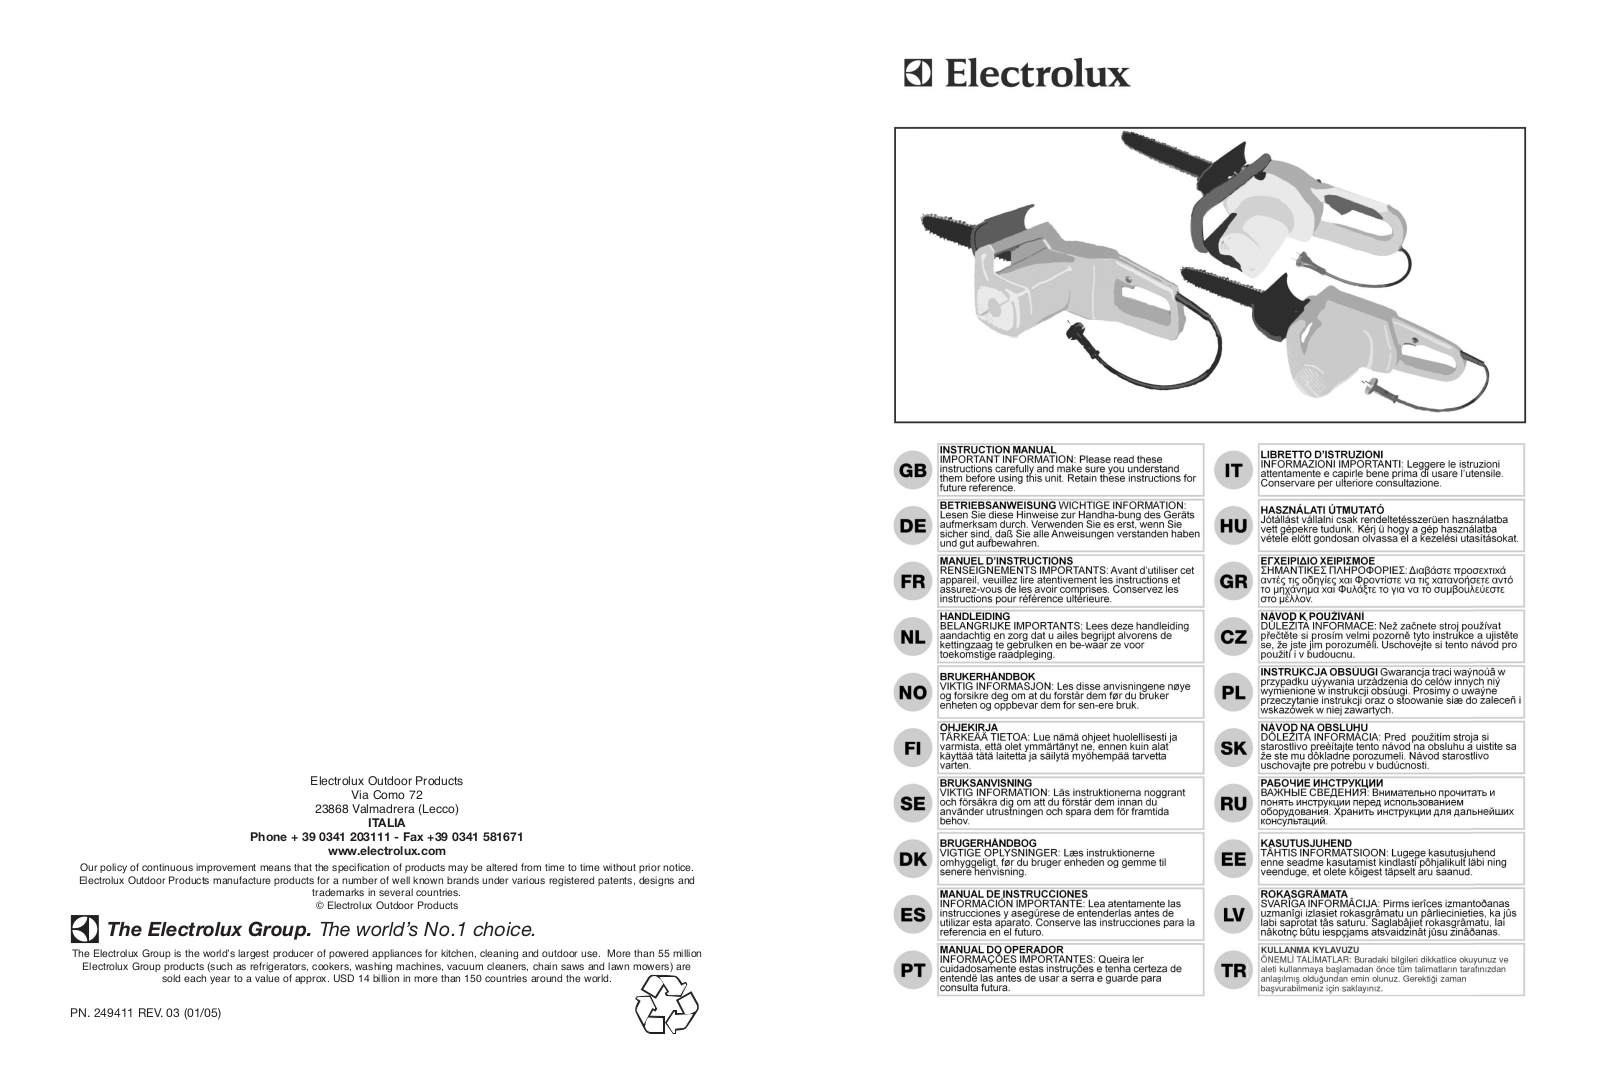 Electrolux P 1916 + CHAIN, P 1435 CH, P 2114 + 10M CABLE, P 1535 CH, M.BOX N°12 P1840 CH+CAVALLETTO Manual